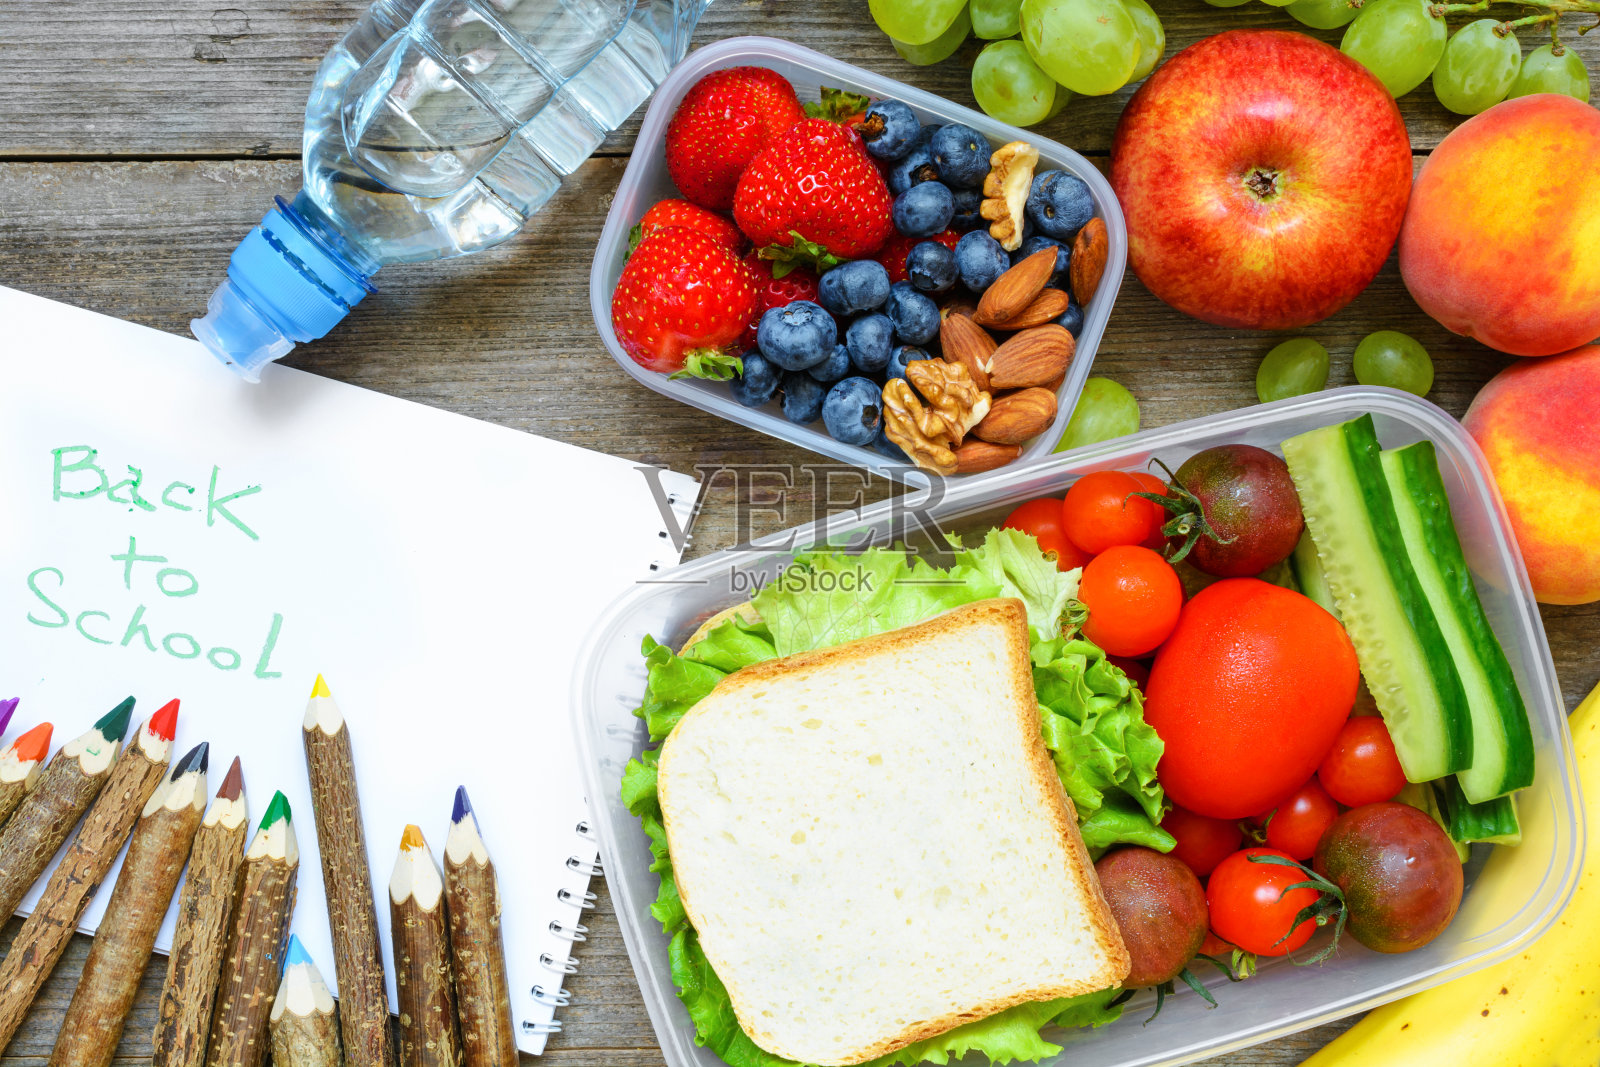 学校午餐盒里有三明治、水果、蔬菜和瓶装水，还有彩色铅笔和回学校的题字。照片摄影图片